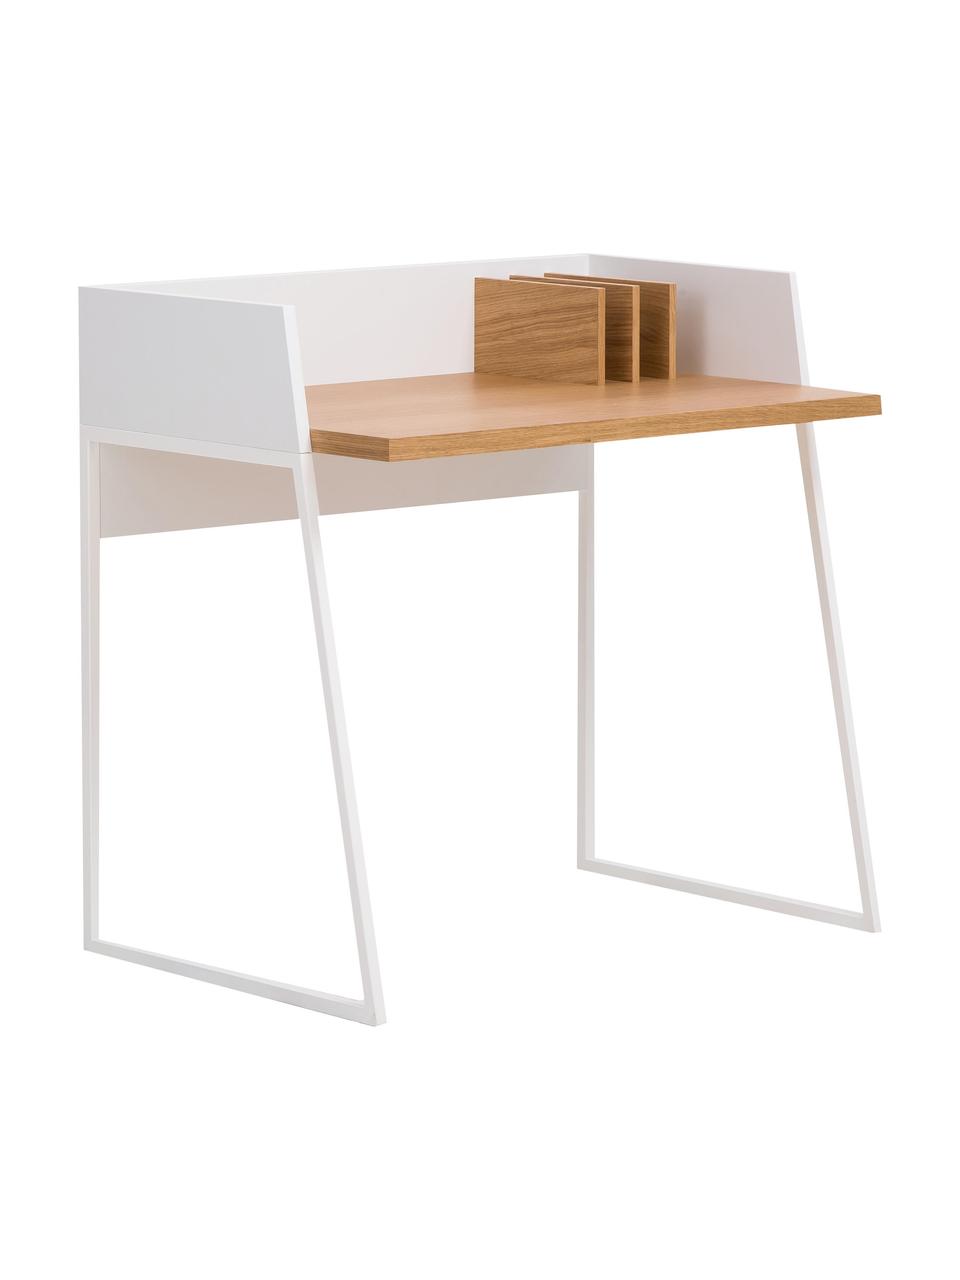 Kleiner Schreibtisch Camille mit Ablage, Beine: Metall, lackiert, Holz, Weiß lackiert, B 90 x T 60 cm